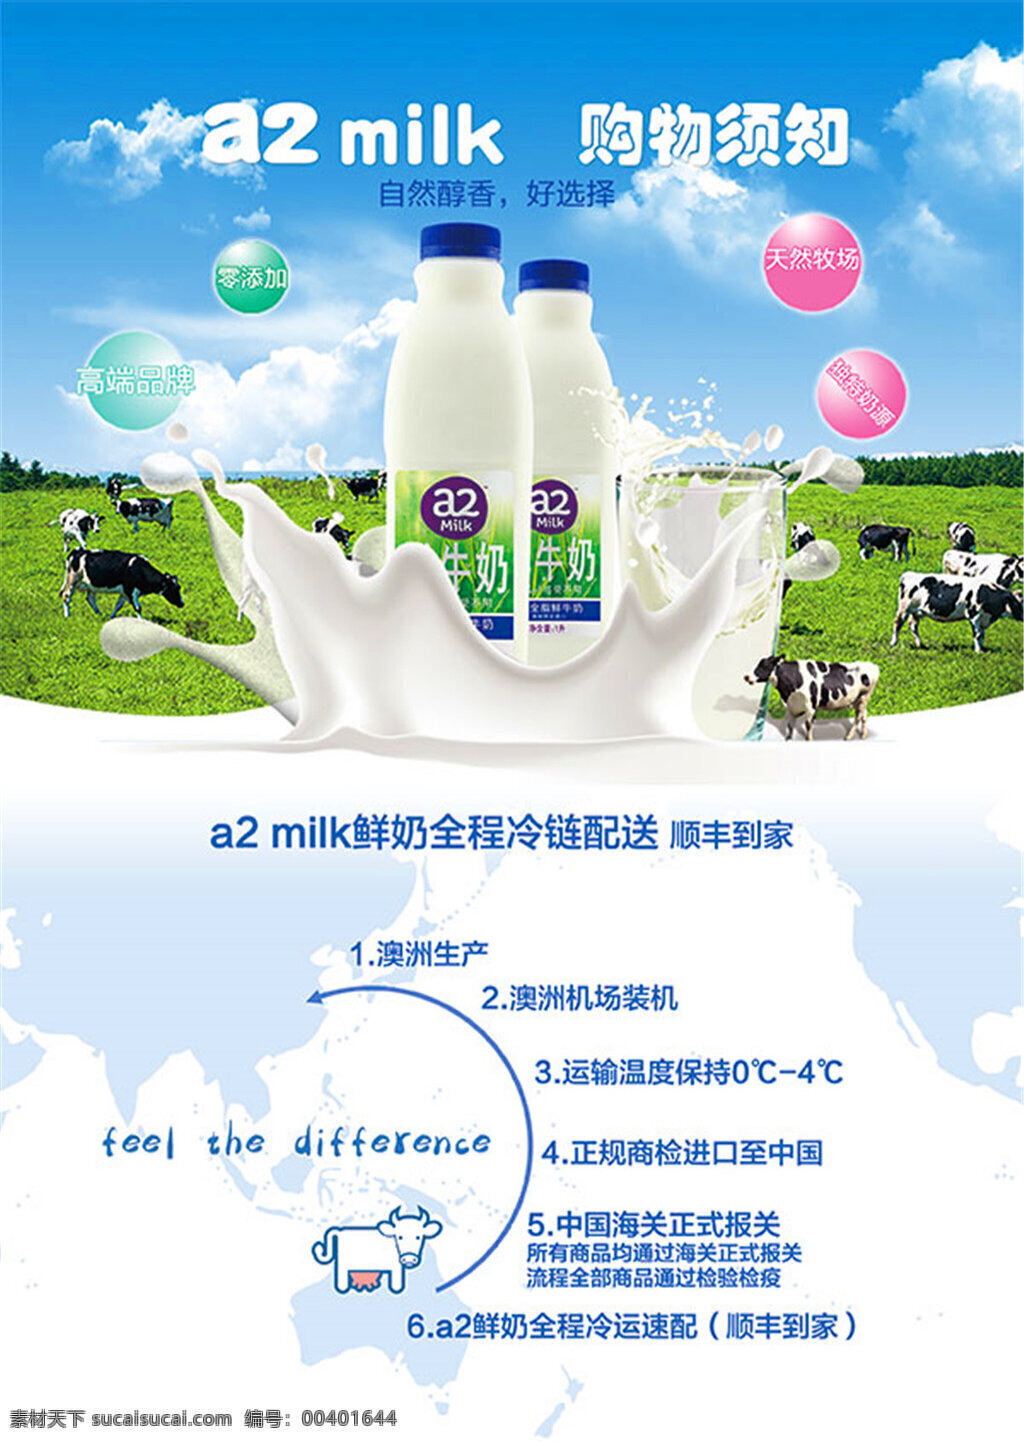 进口 牛奶 宣传单 milk 澳洲 进口牛奶 澳洲牛奶 奶牛 天然牧场 自然醇香